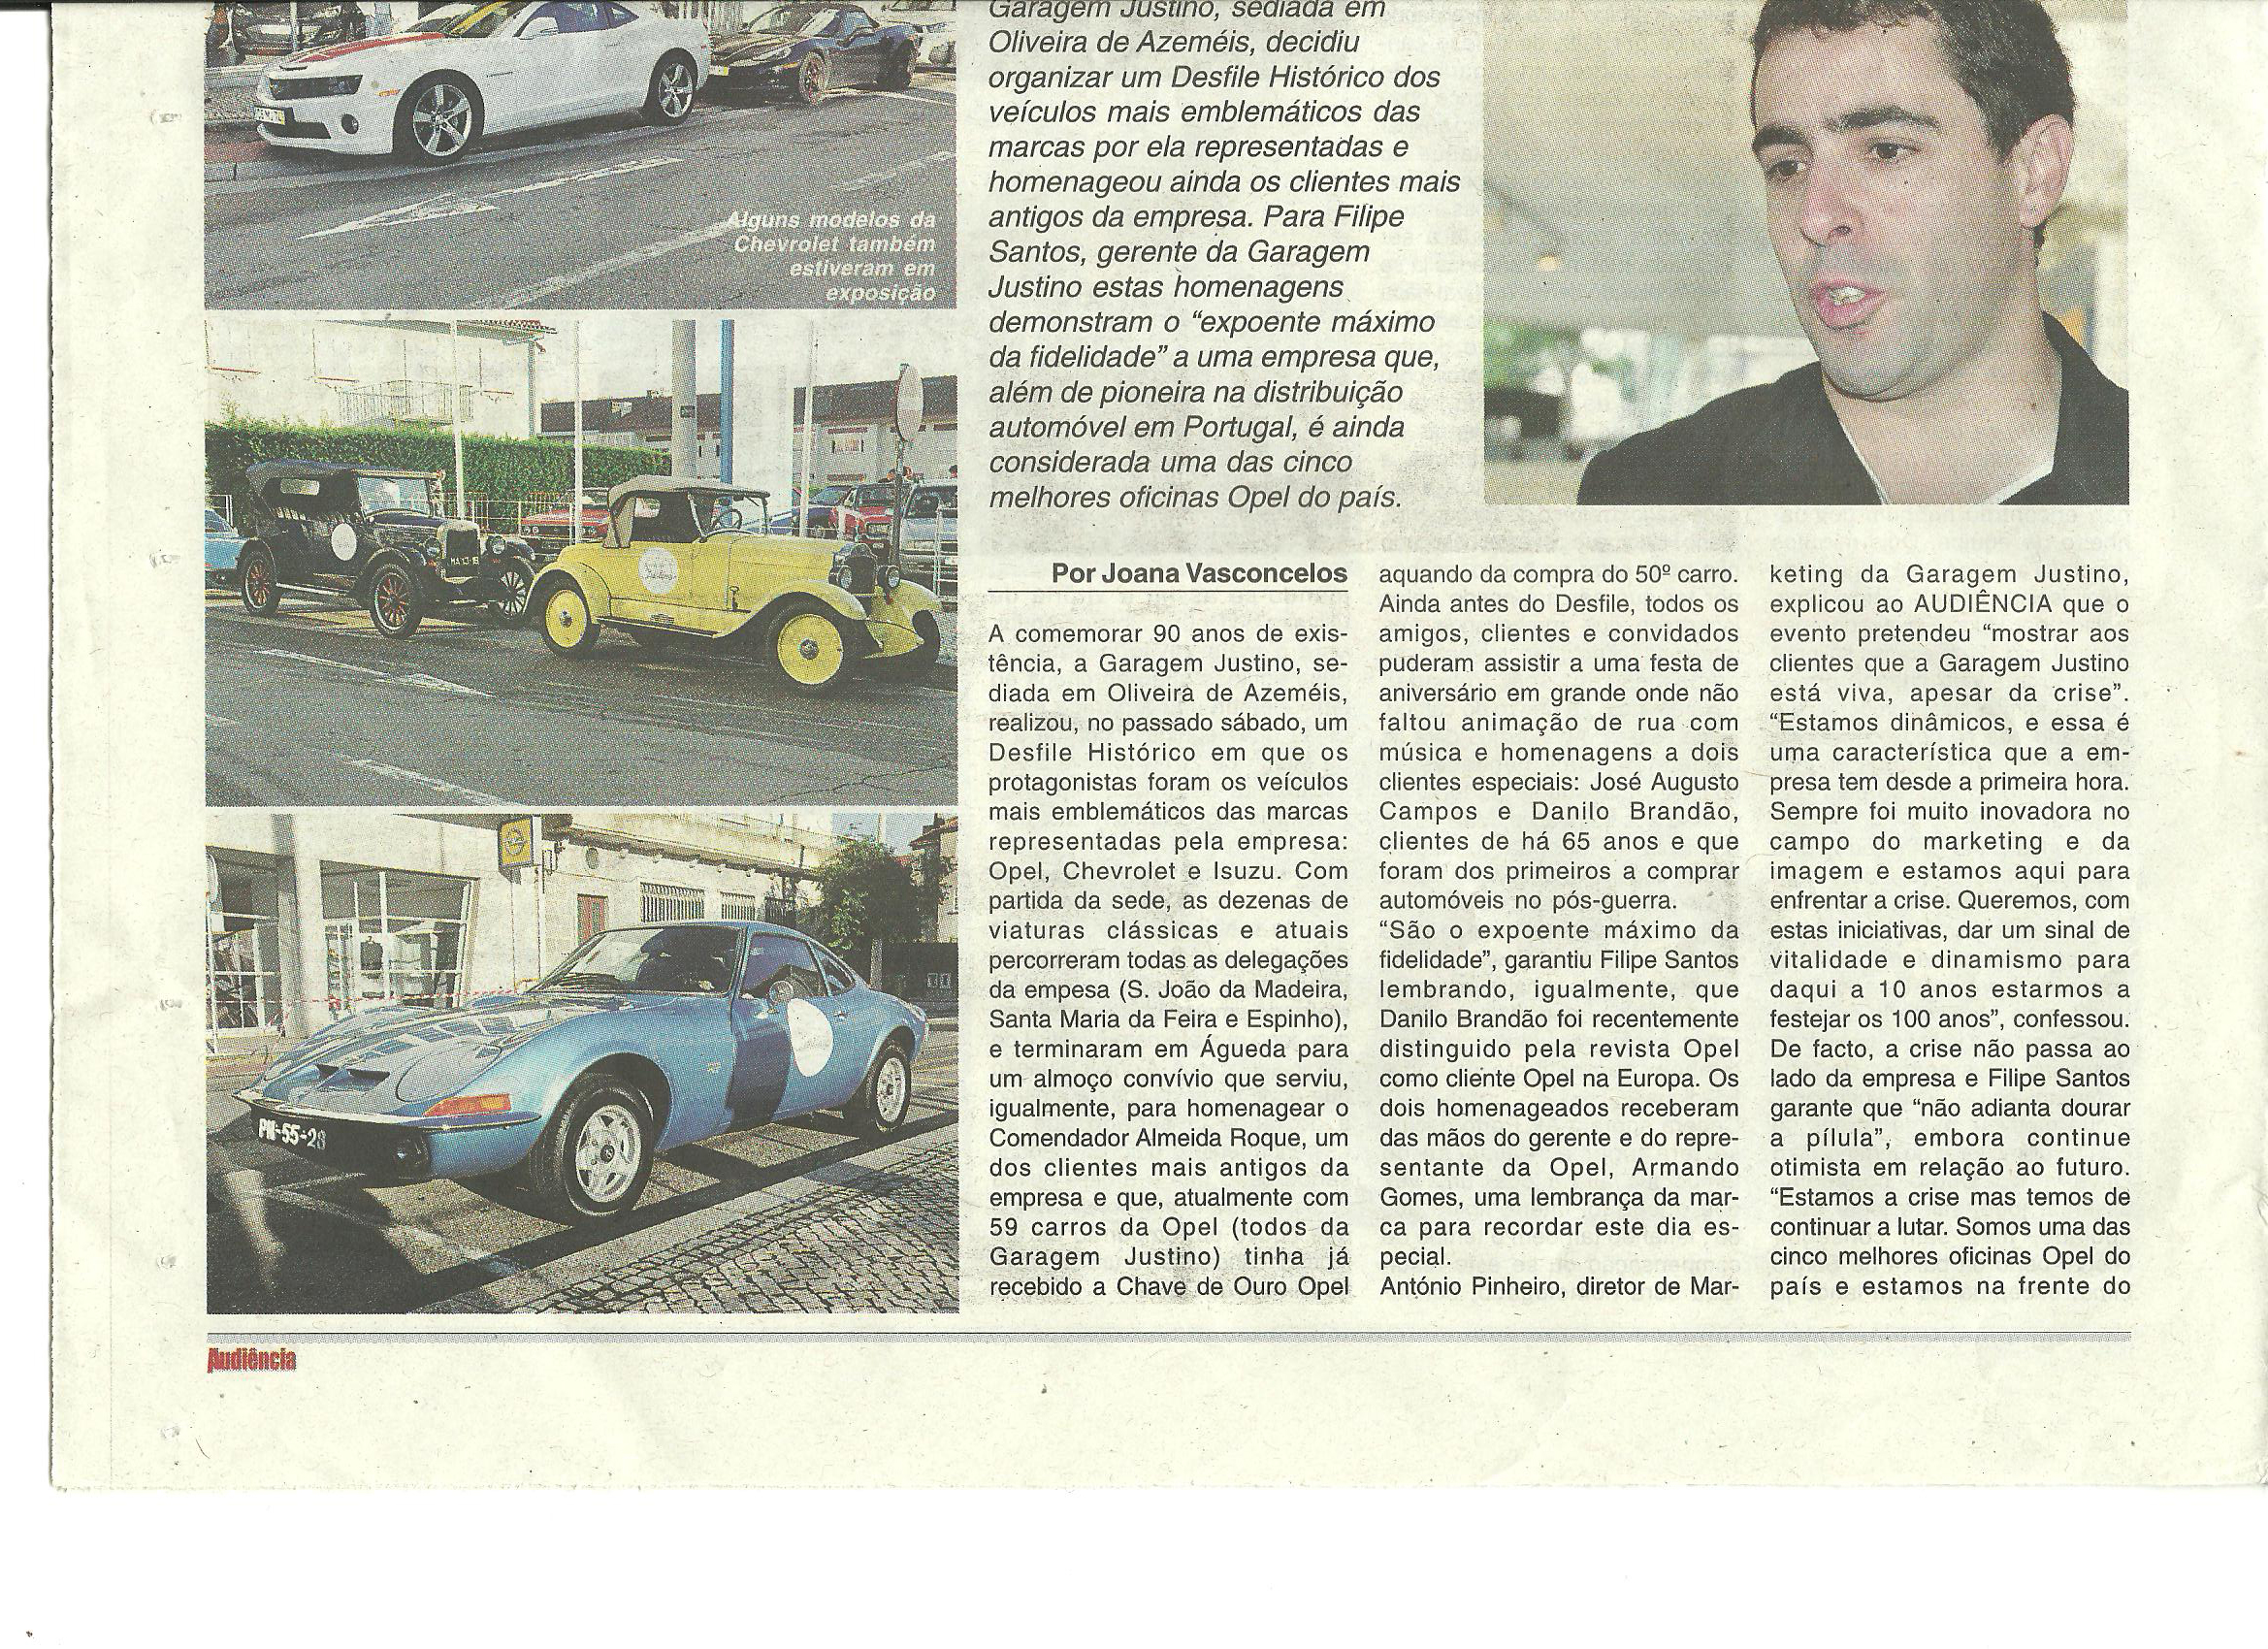 Garagem Justino no Jornal Audiência